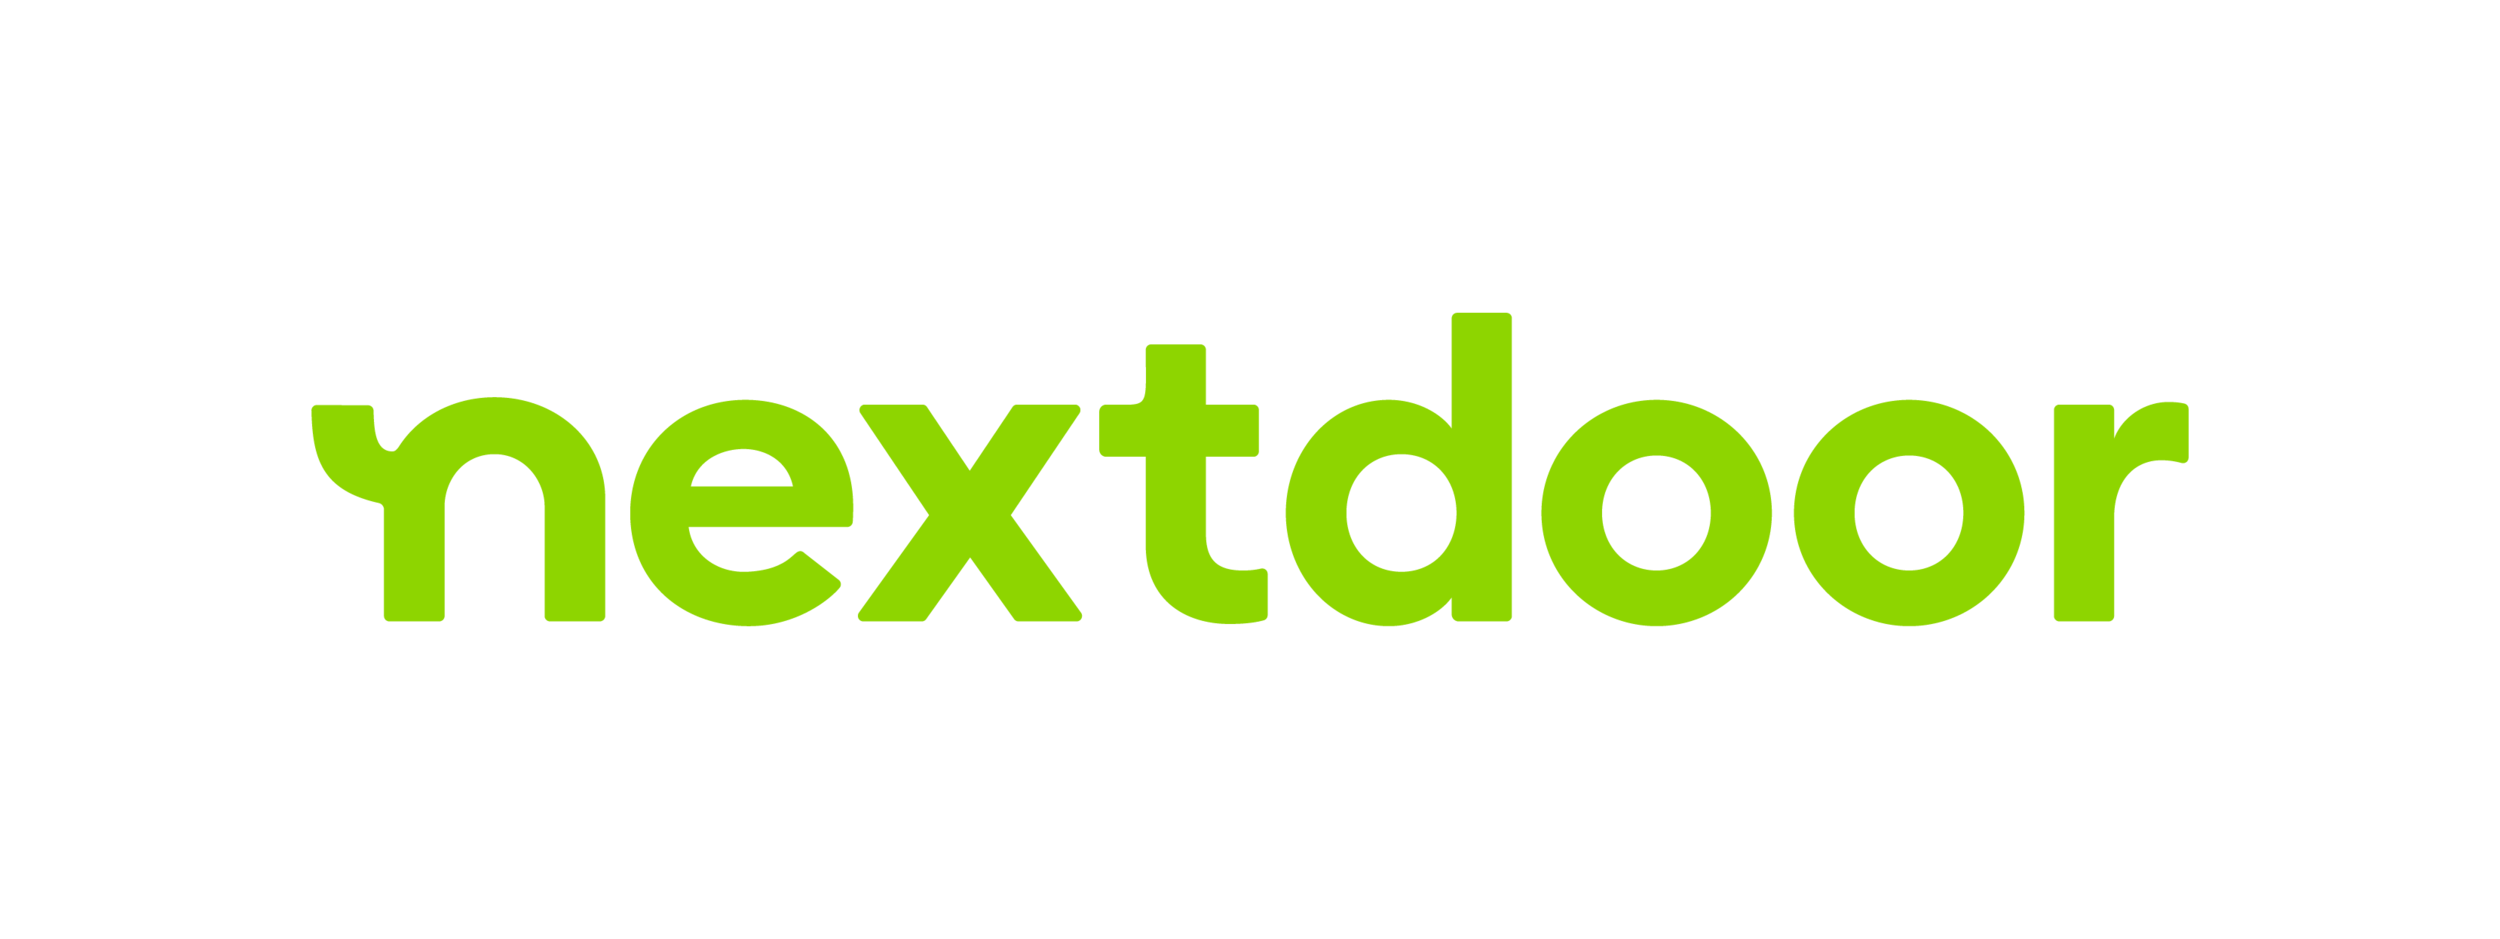 NextdoorLogo_green.png